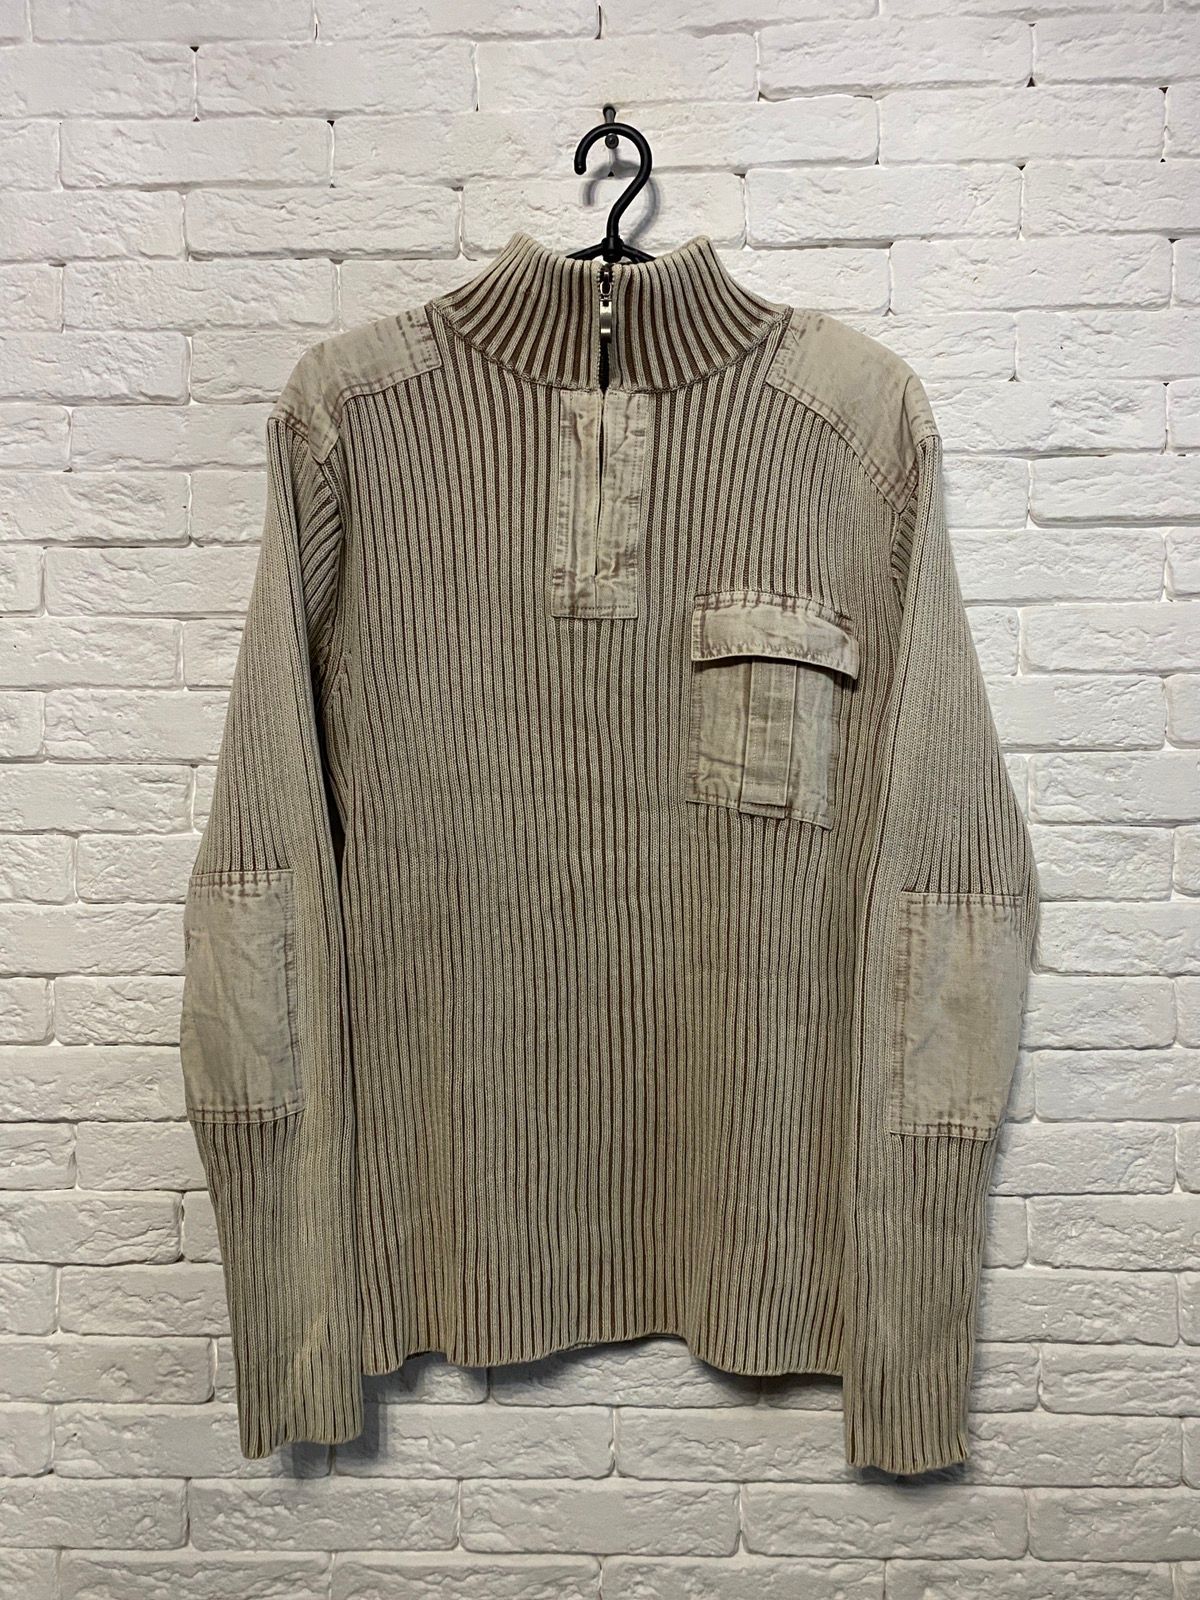 Pre-owned Avant Garde Vintage Avant Gard Y2k Sweater Opium Style 1/4 Zip In White